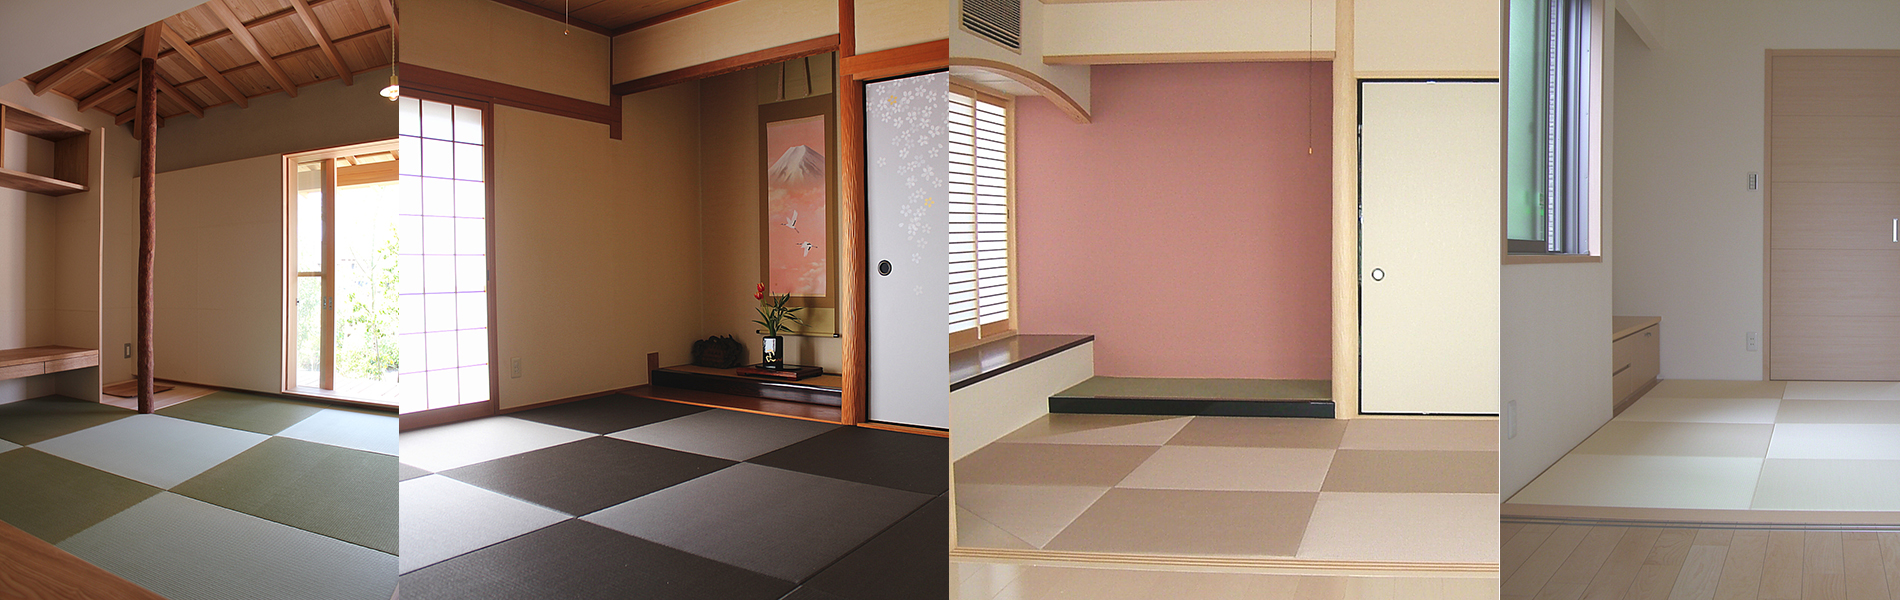 琉球畳のサイズは 気になる値段や色についても紹介 住まいのお役立ち記事